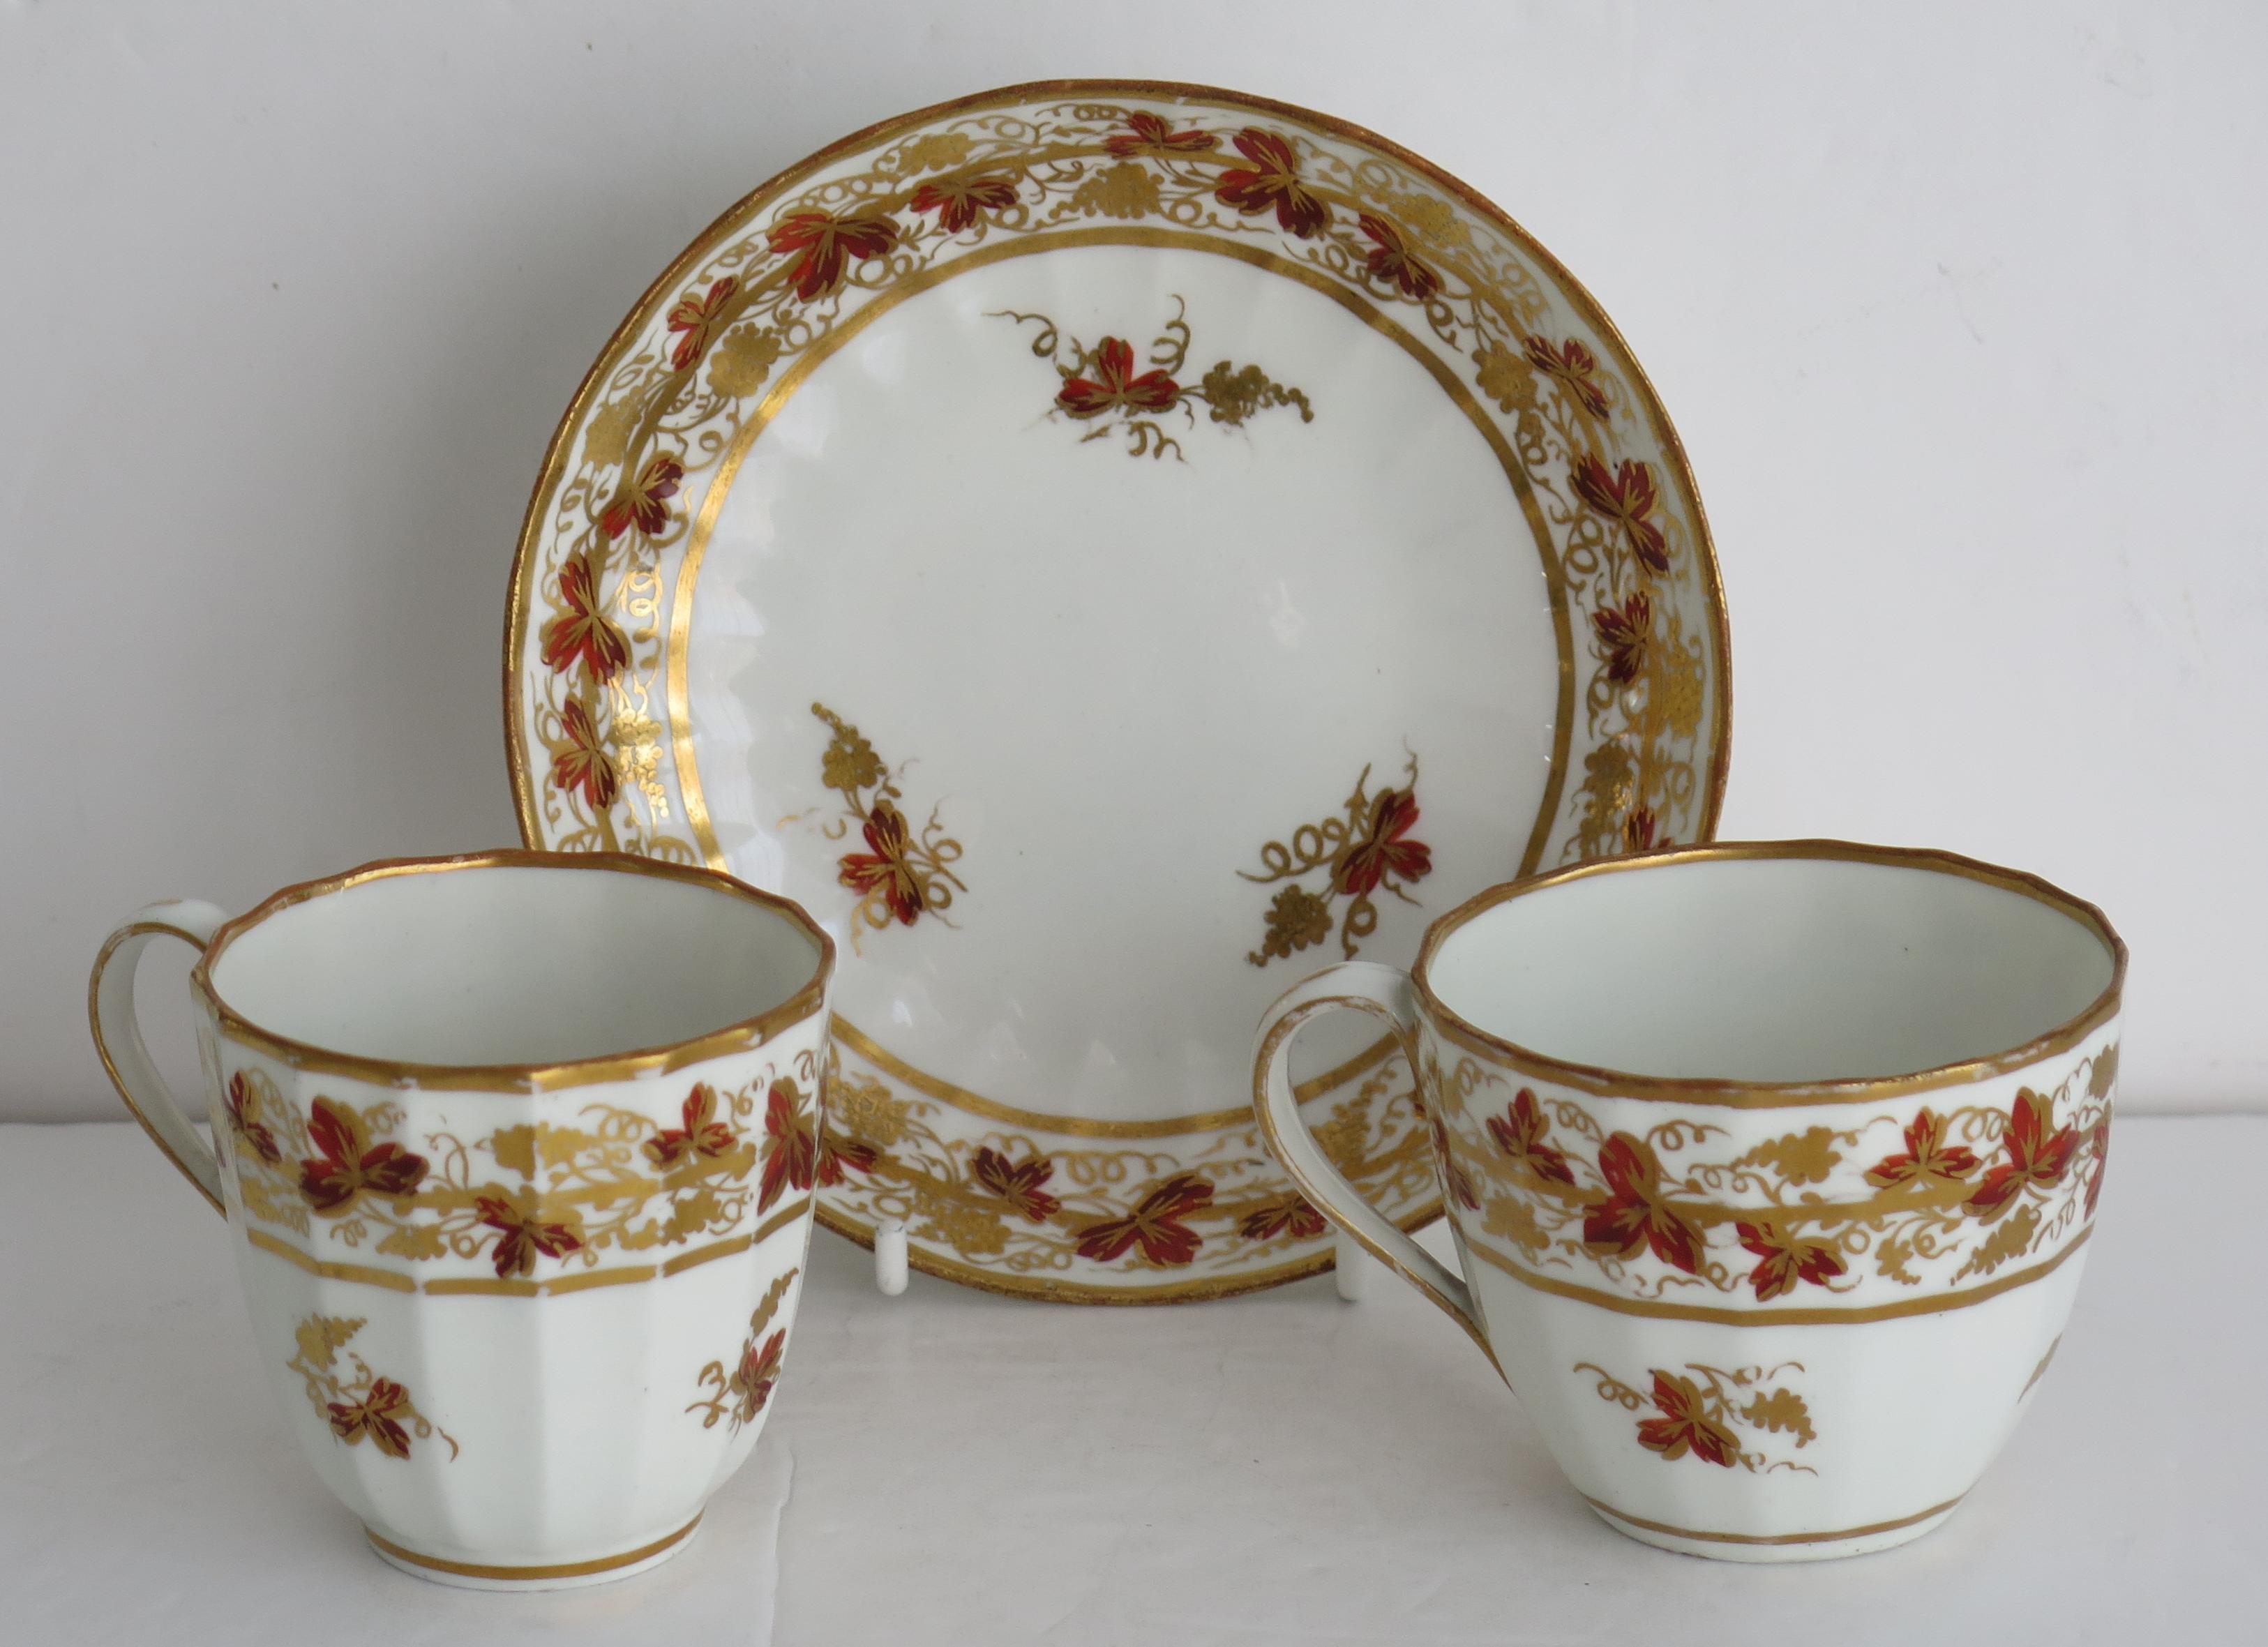 Il s'agit d'un bon TRIO en porcelaine composé d'une tasse à thé, d'une tasse à café et d'une soucoupe, fabriqué par la manufacture de Derby pendant la période George 111, vers 1795.

Les pièces sont bien empotées dans la forme de flûte Hamilton